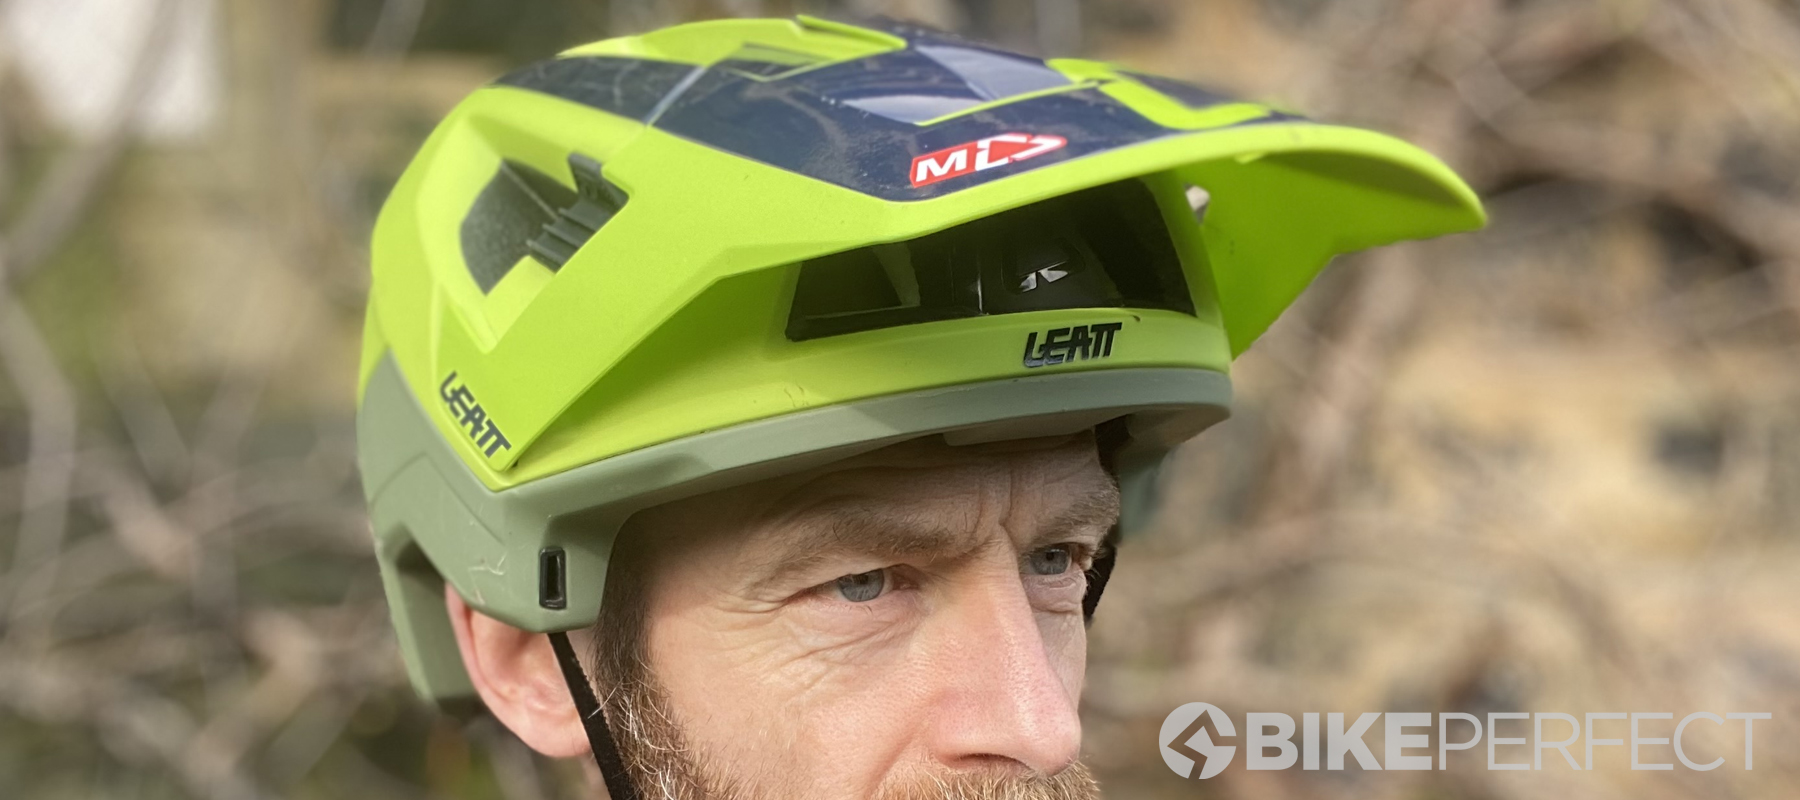 Tien jaar Harnas Zinloos Leatt MTB 4.0 Enduro V21 review | BikePerfect